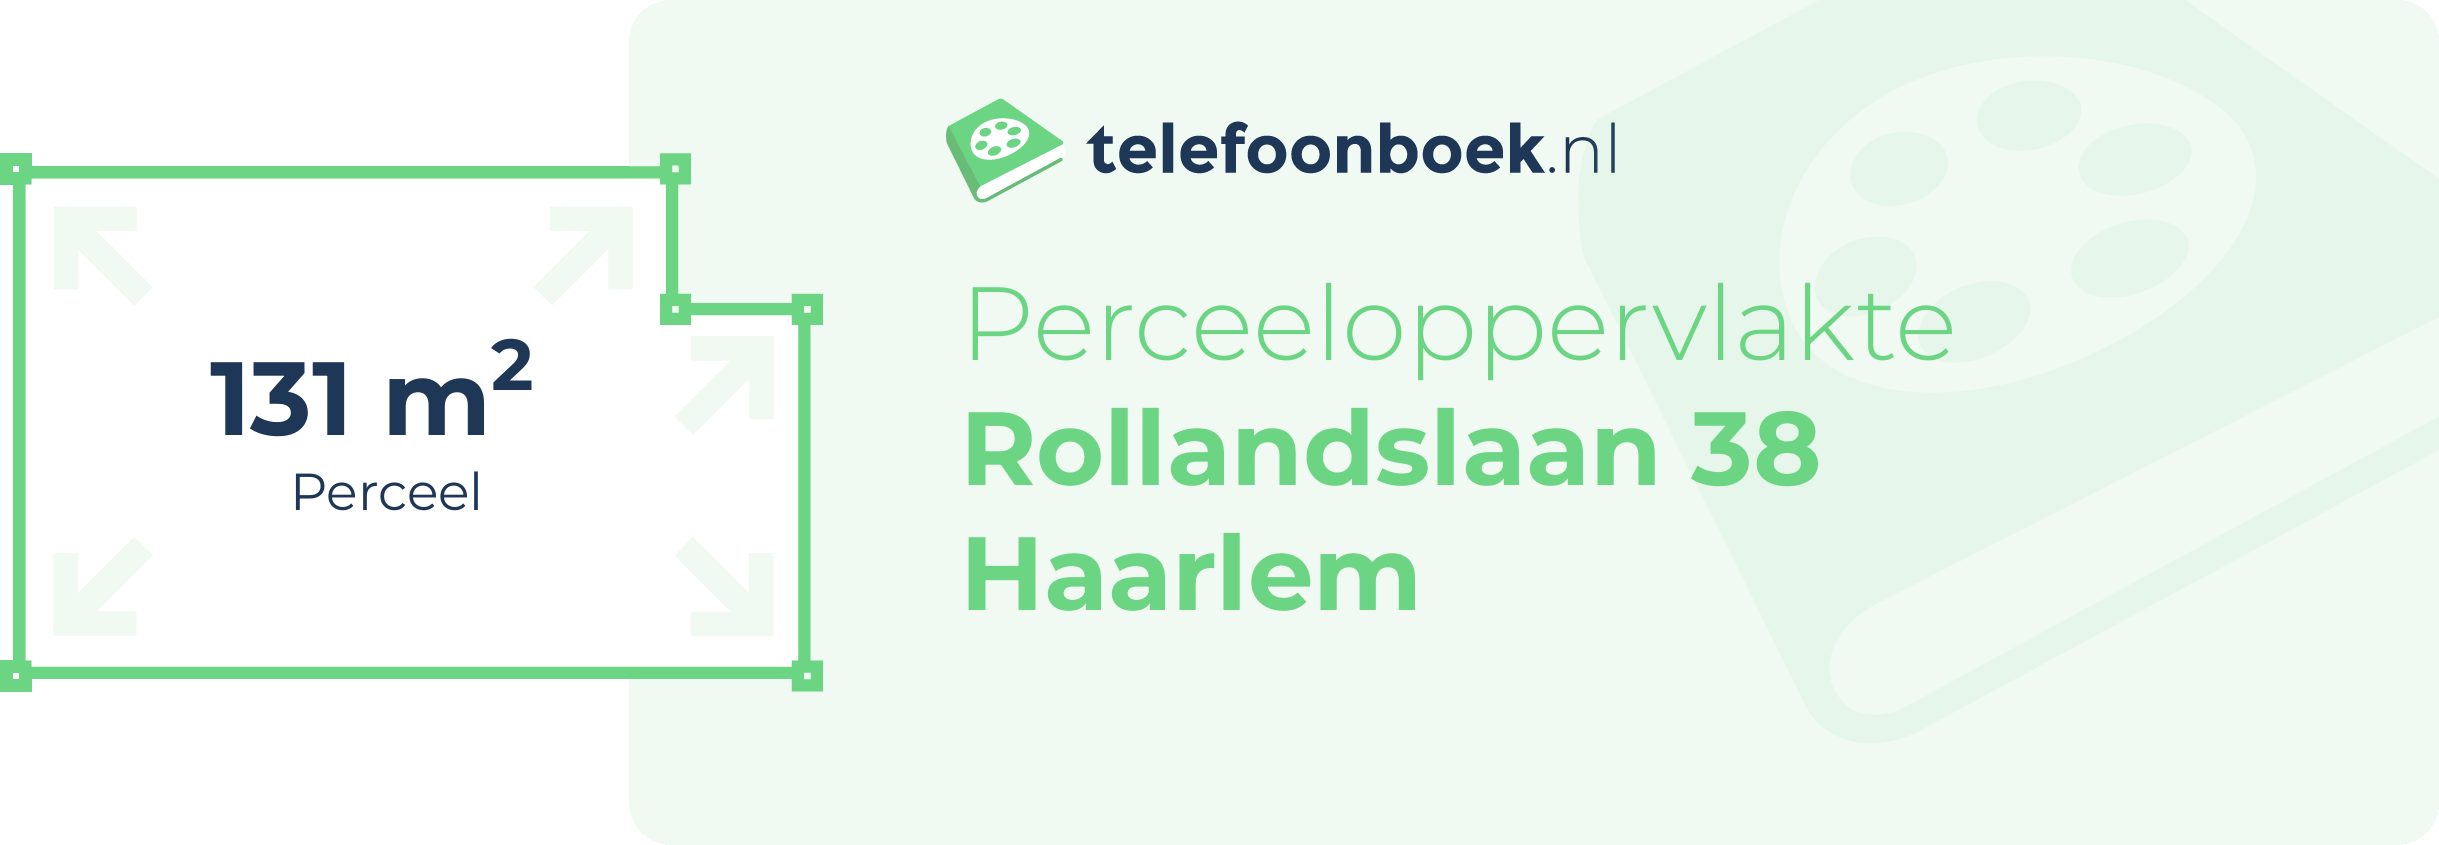 Perceeloppervlakte Rollandslaan 38 Haarlem